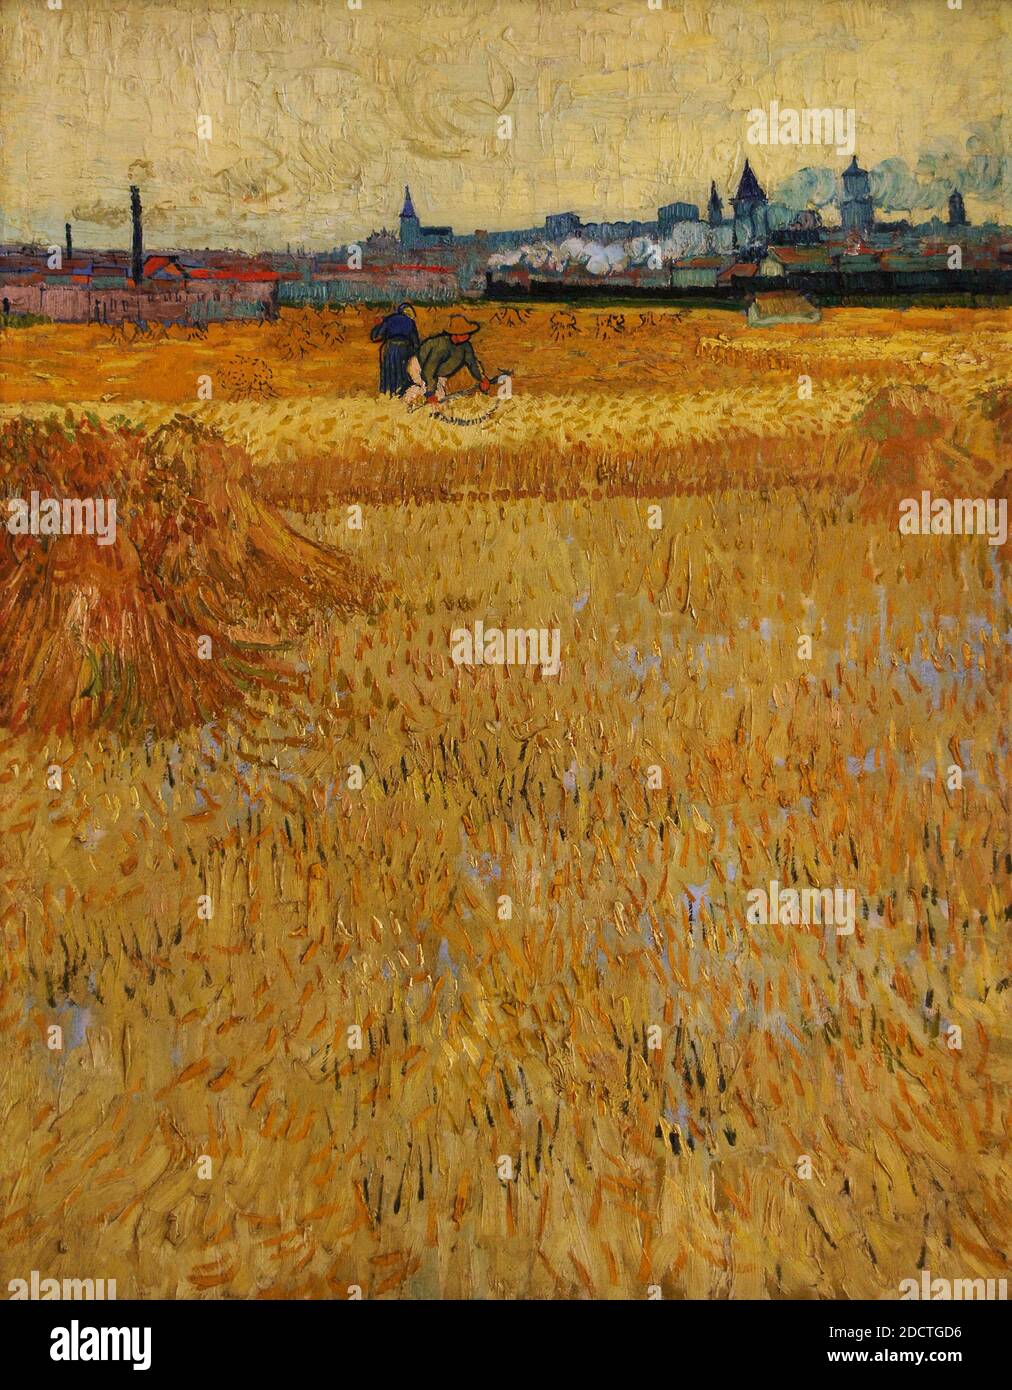 Vincent Van Gogh (1853-1890). Holländischer Maler nach dem Impressionismus. The Harvesters, 1888. Öl auf Leinwand (73 x 54 cm). Rodin Museum. Paris. Frankreich. Stockfoto